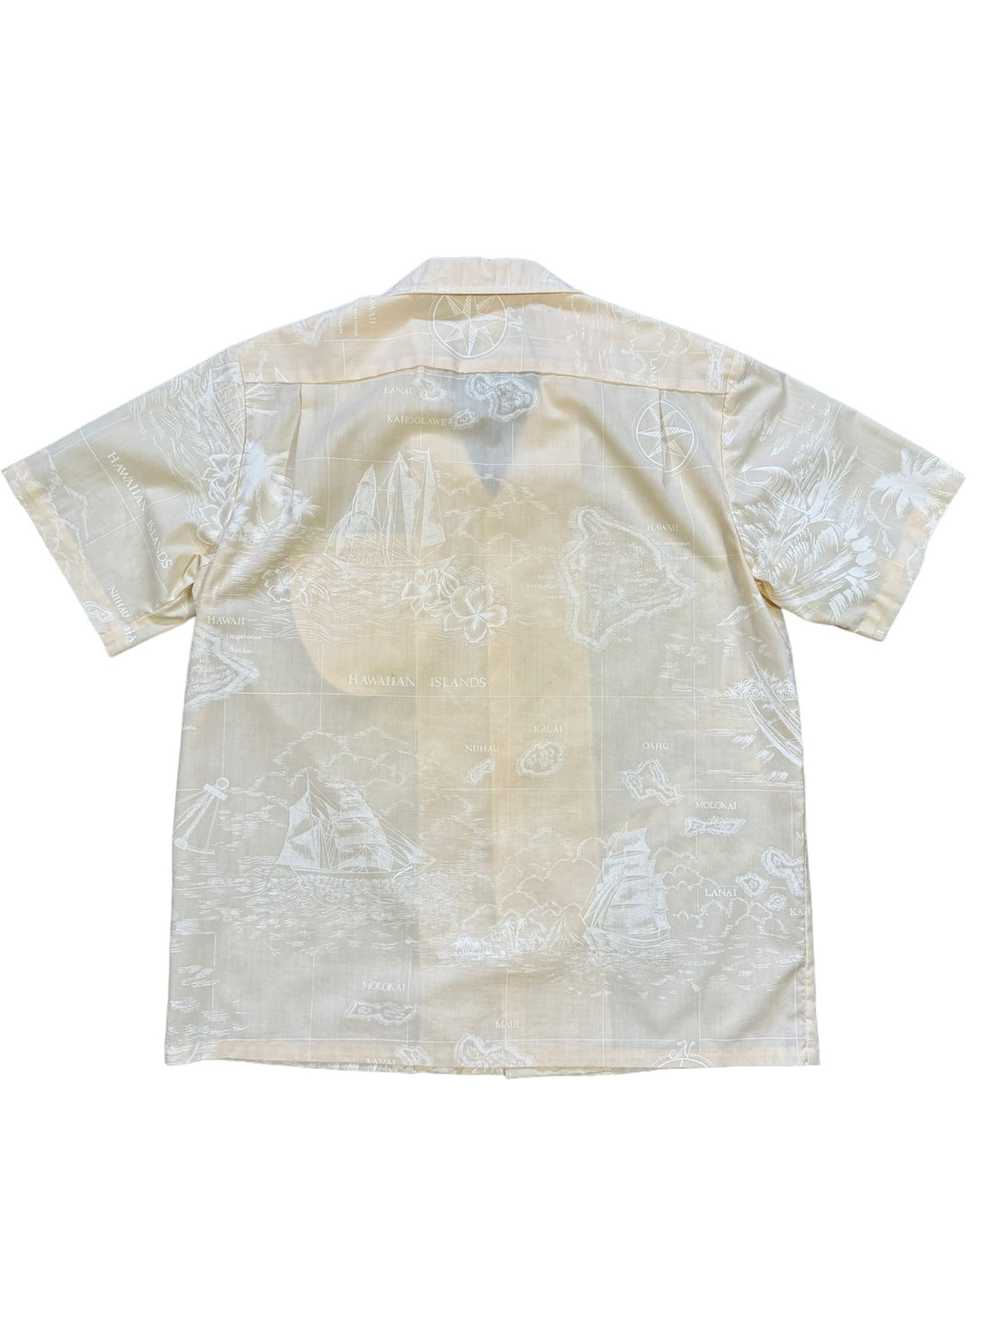 Hawaiian Shirt × Made In Hawaii × Vintage 60s Hel… - image 4